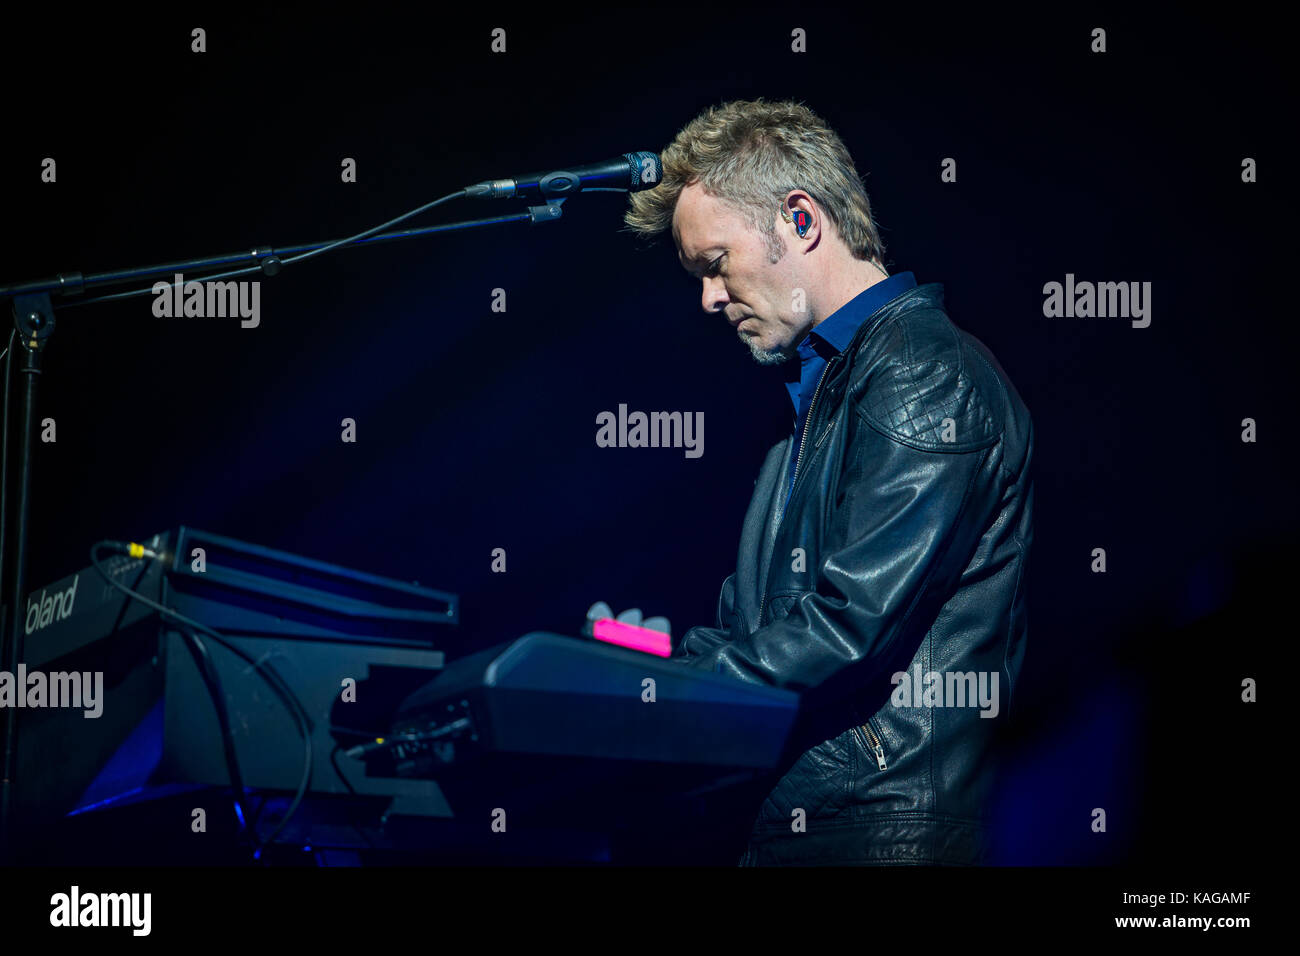 Die norwegische pop-rock Gruppe A-ha führt ein Live Konzert in Oslo Spektrum in Oslo. Hier Keyboarder Magne Furuholmen wird gesehen, live auf der Bühne. Norwegen, 30/04 2016. Stockfoto